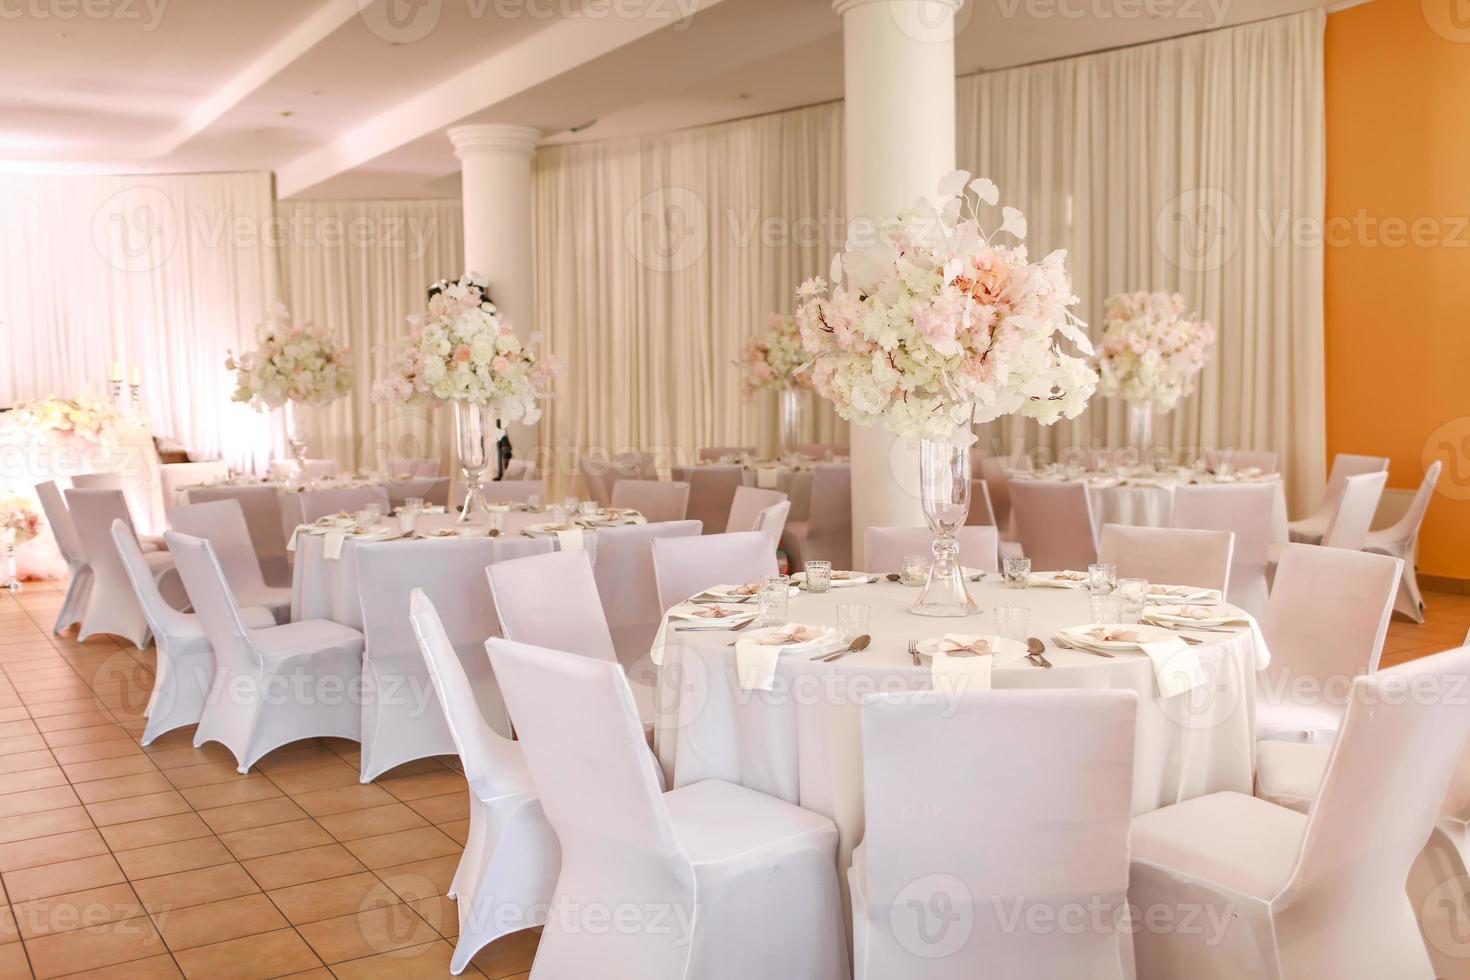 festivo nozze decorazione. bellissimo fresco bianca e rosa fiori nel bicchiere vaso su cenare tavolo su nozze giorno. alto qualità foto